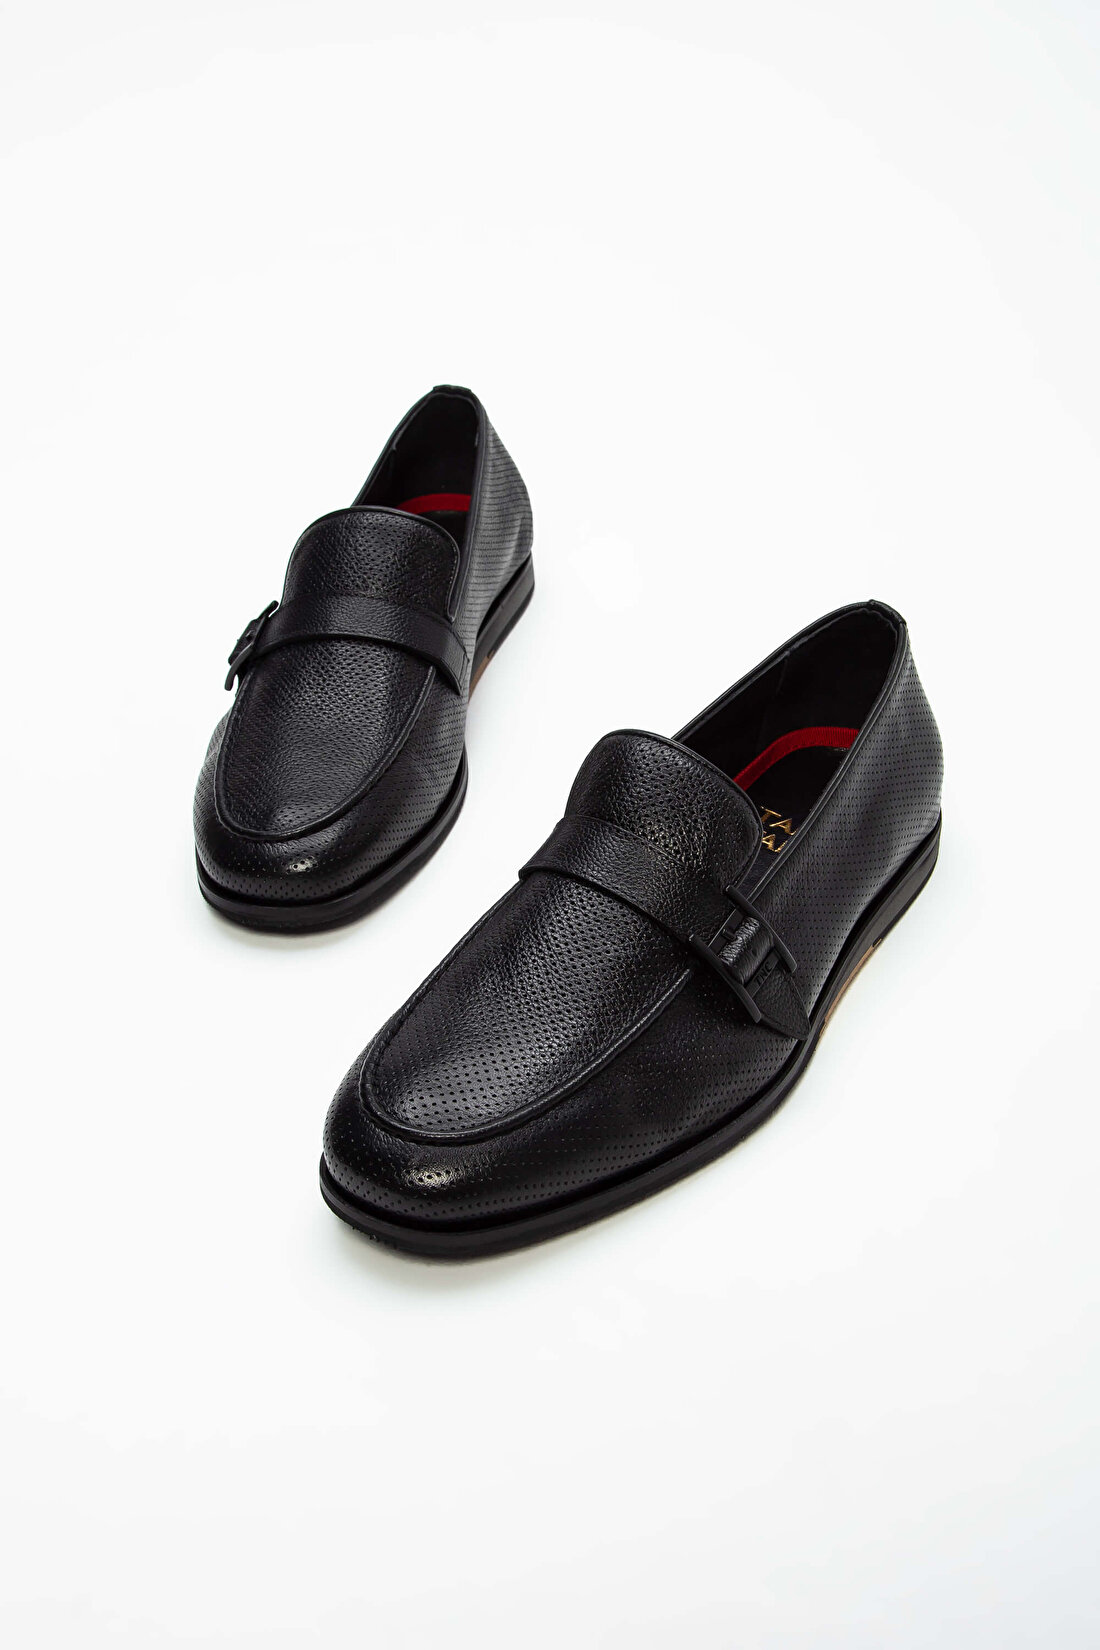 Tamer Tanca Erkek Hakiki Deri Siyah Loafer Ayakkabı